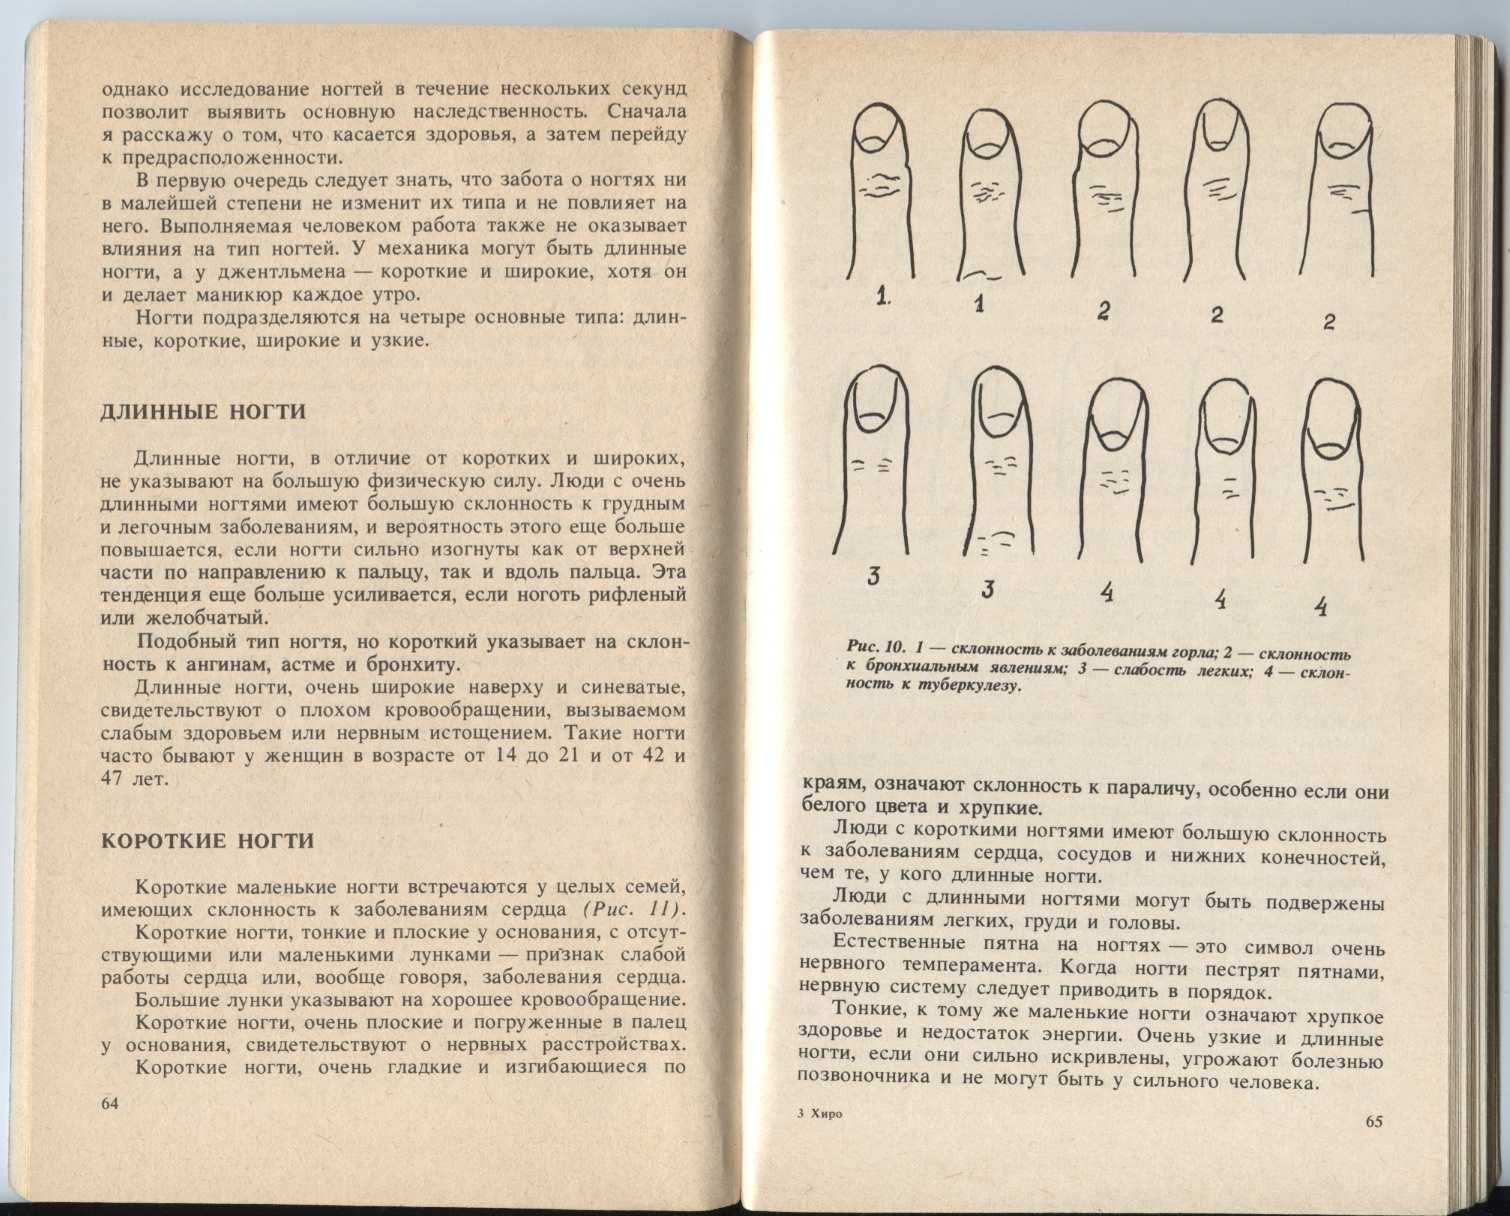 Книга "Хиро. Хиромантия. Язык руки". Автор: Луис Хамон. 1991г.